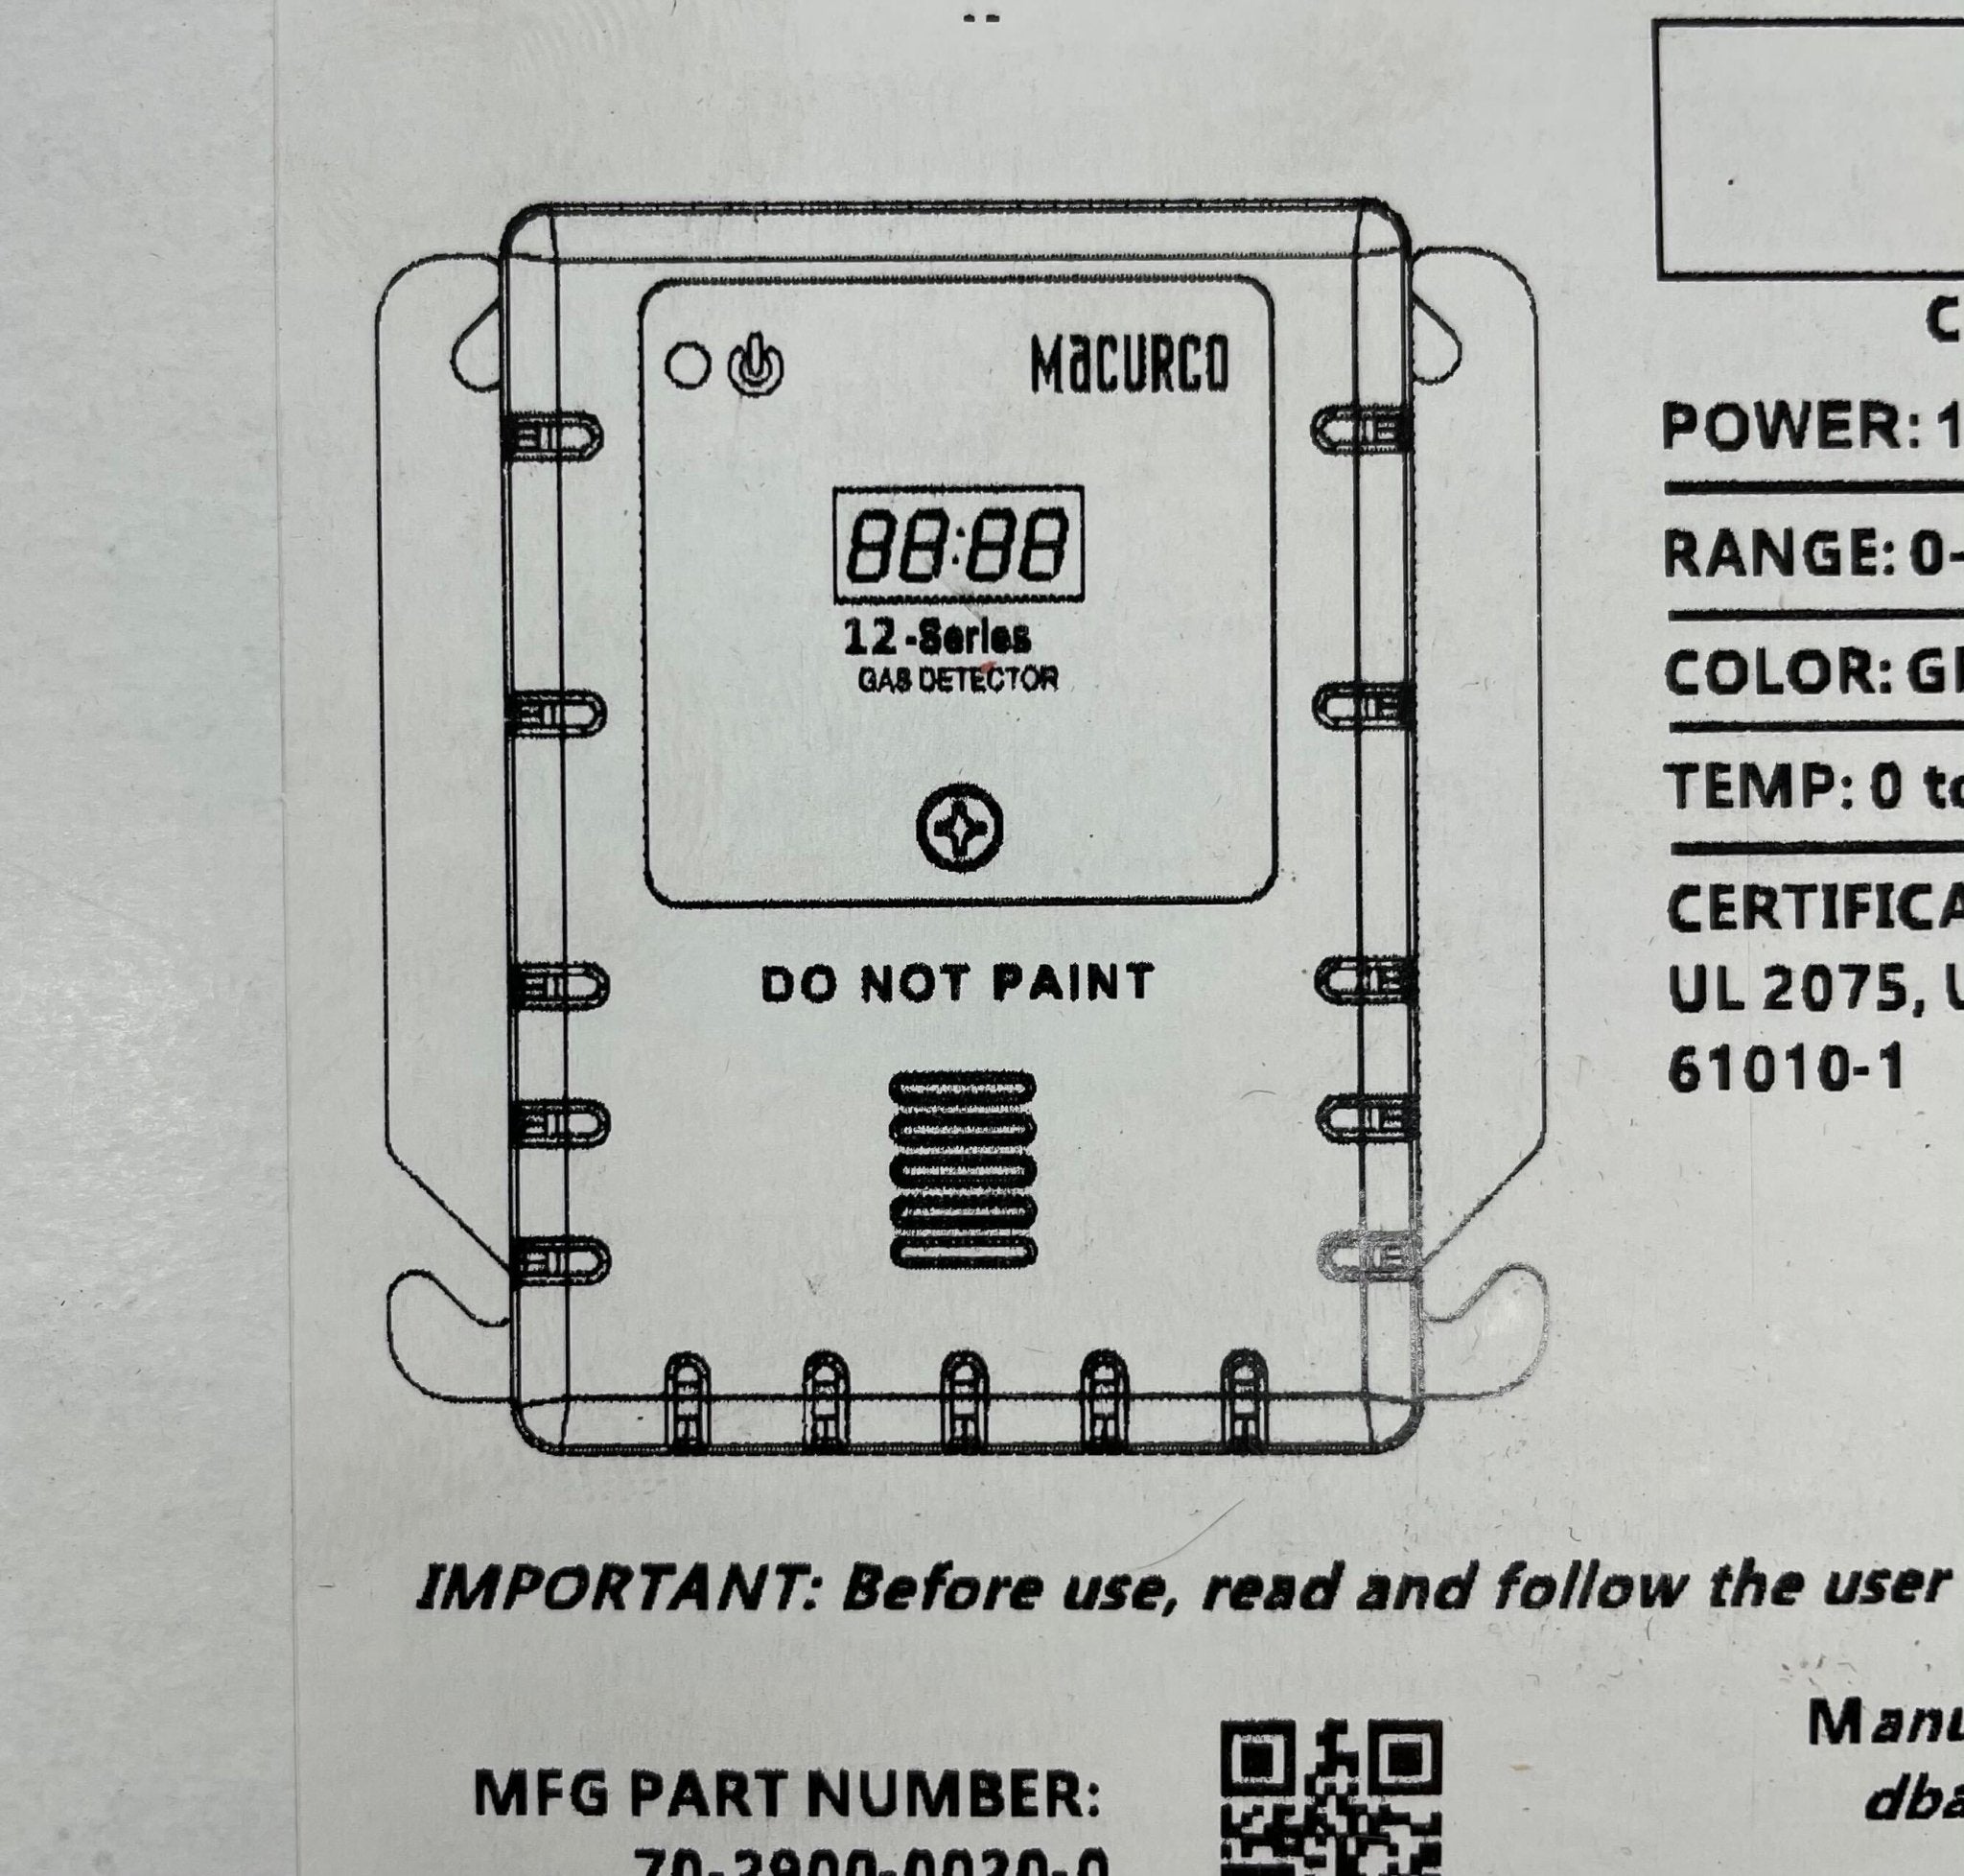 Macurco CM-12 Carbon Monoxide Gas Detector - The Fire Alarm Supplier